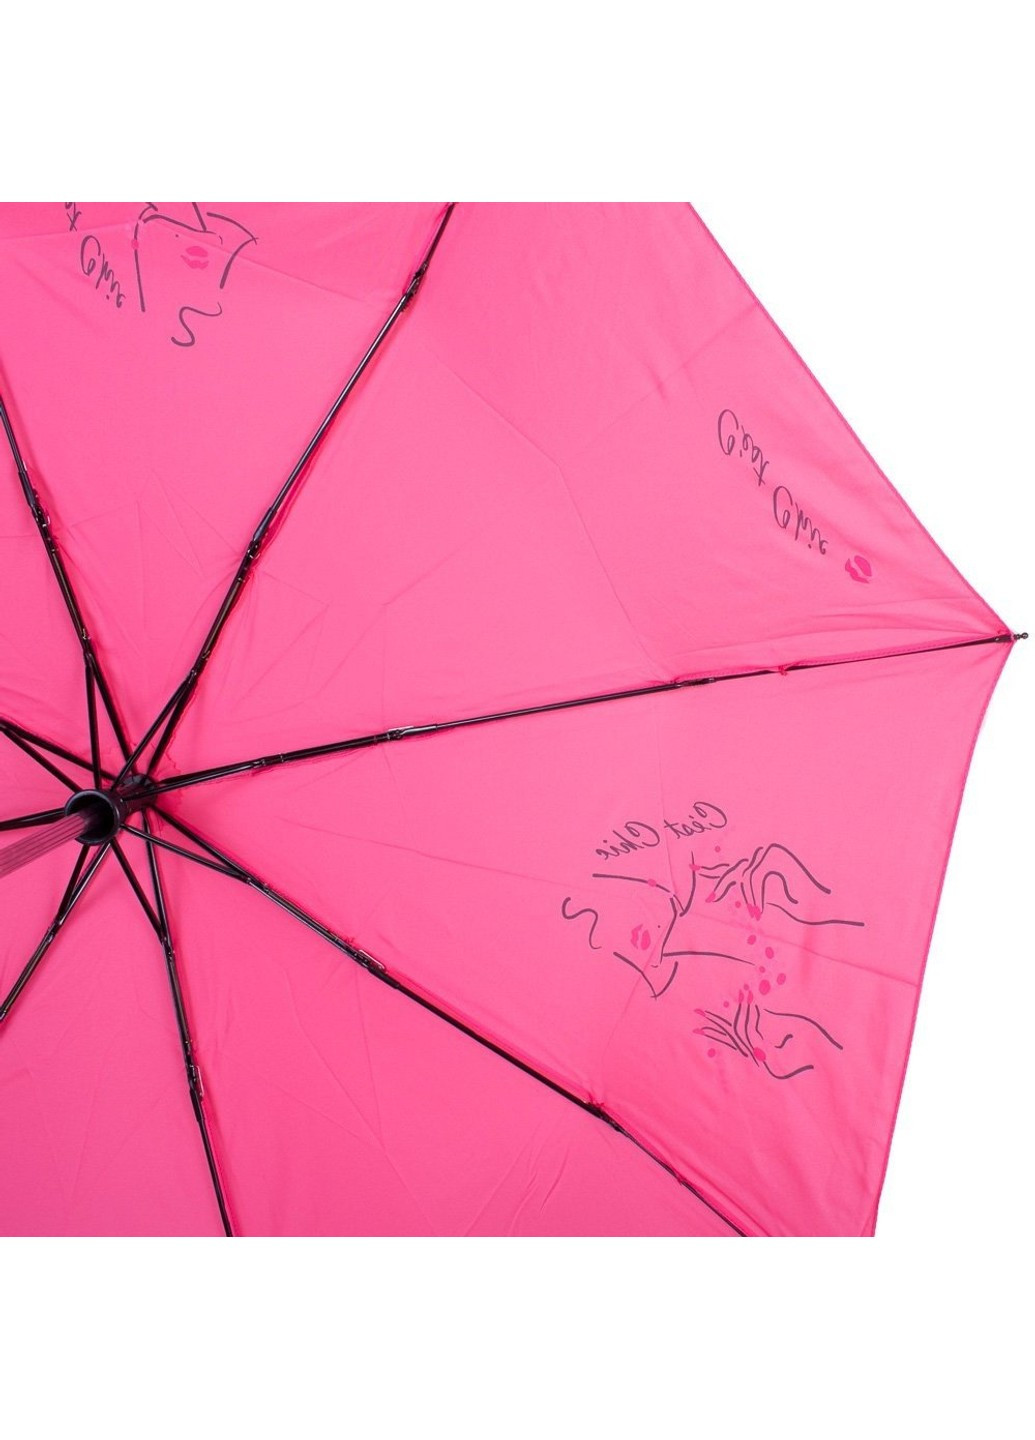 Жіночий рожевий парасолька автомат Airton (262982725)